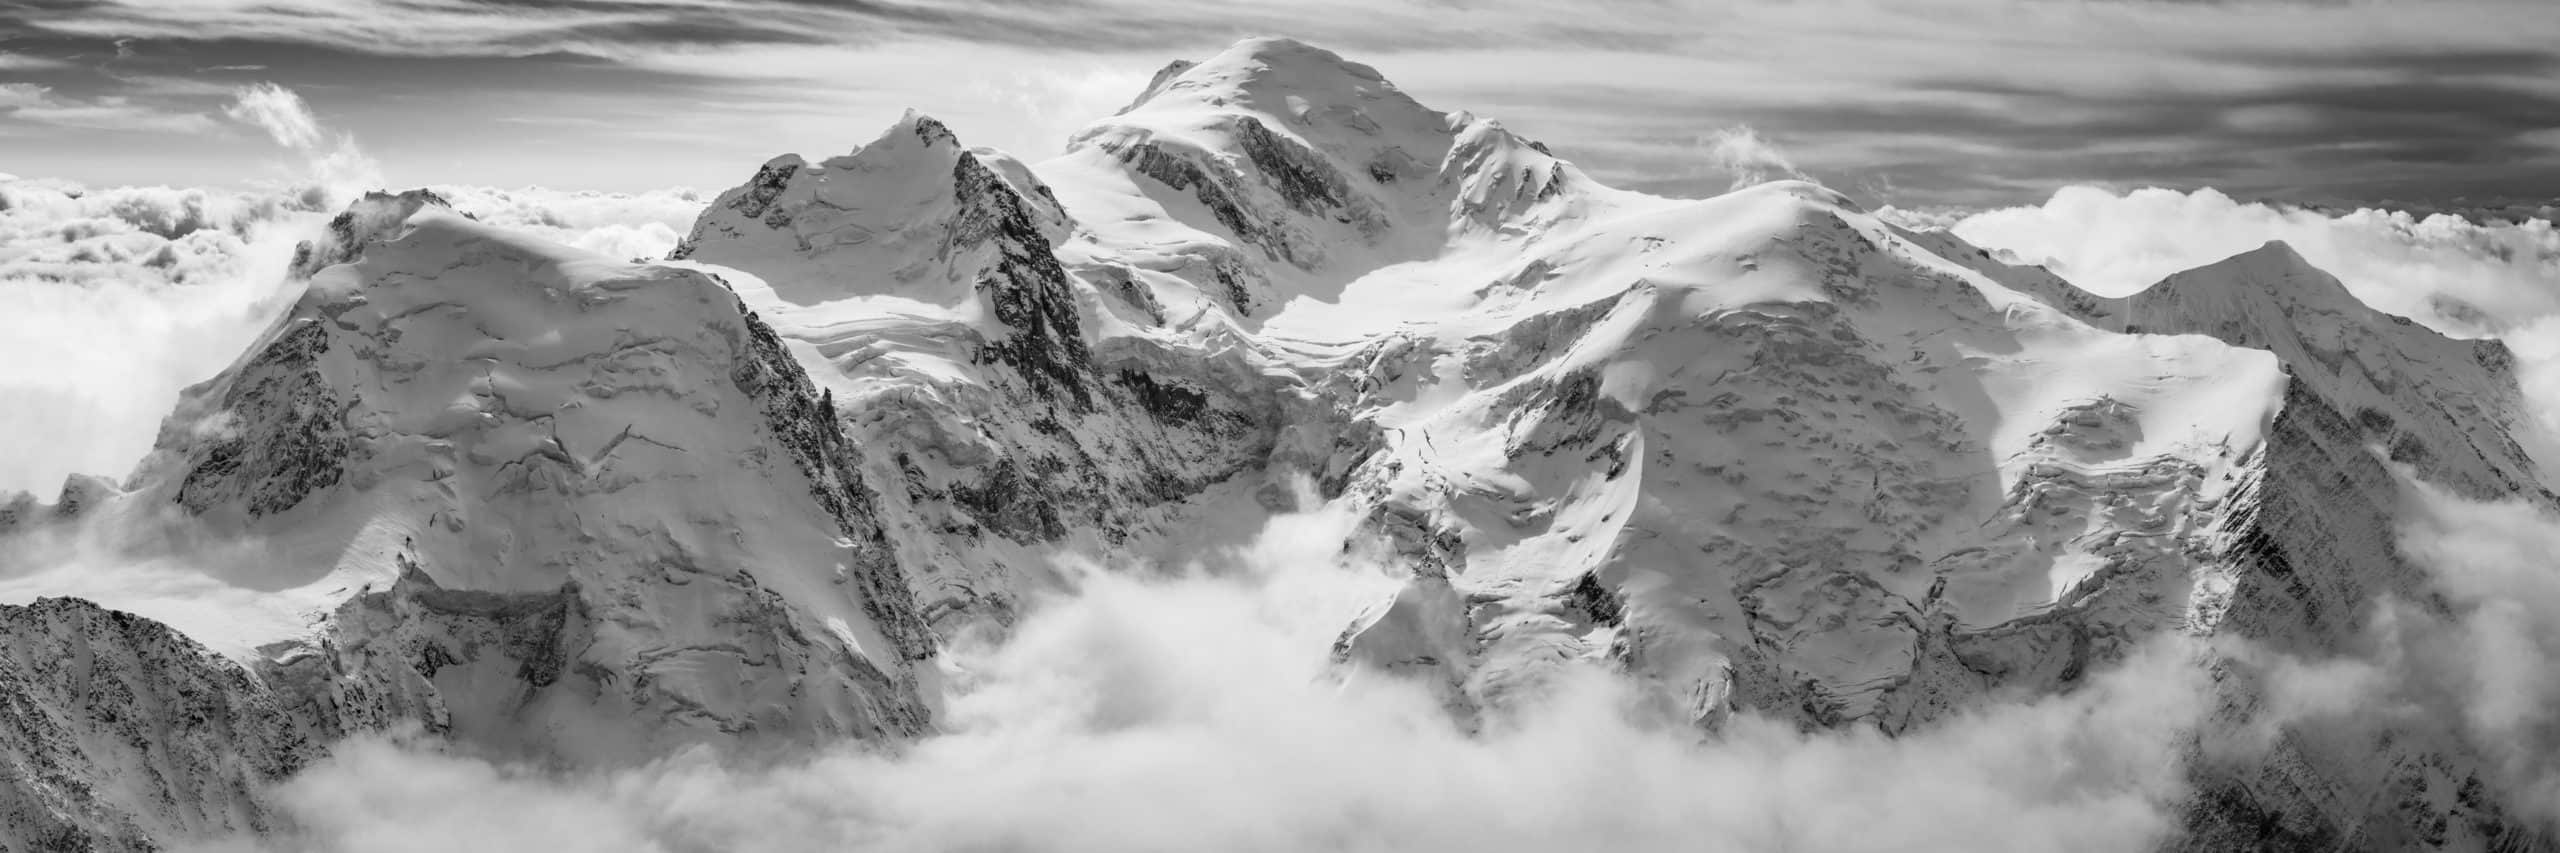 panorama exceptionnel sur le massif du mont blanc - photo panoramique noir et blanc